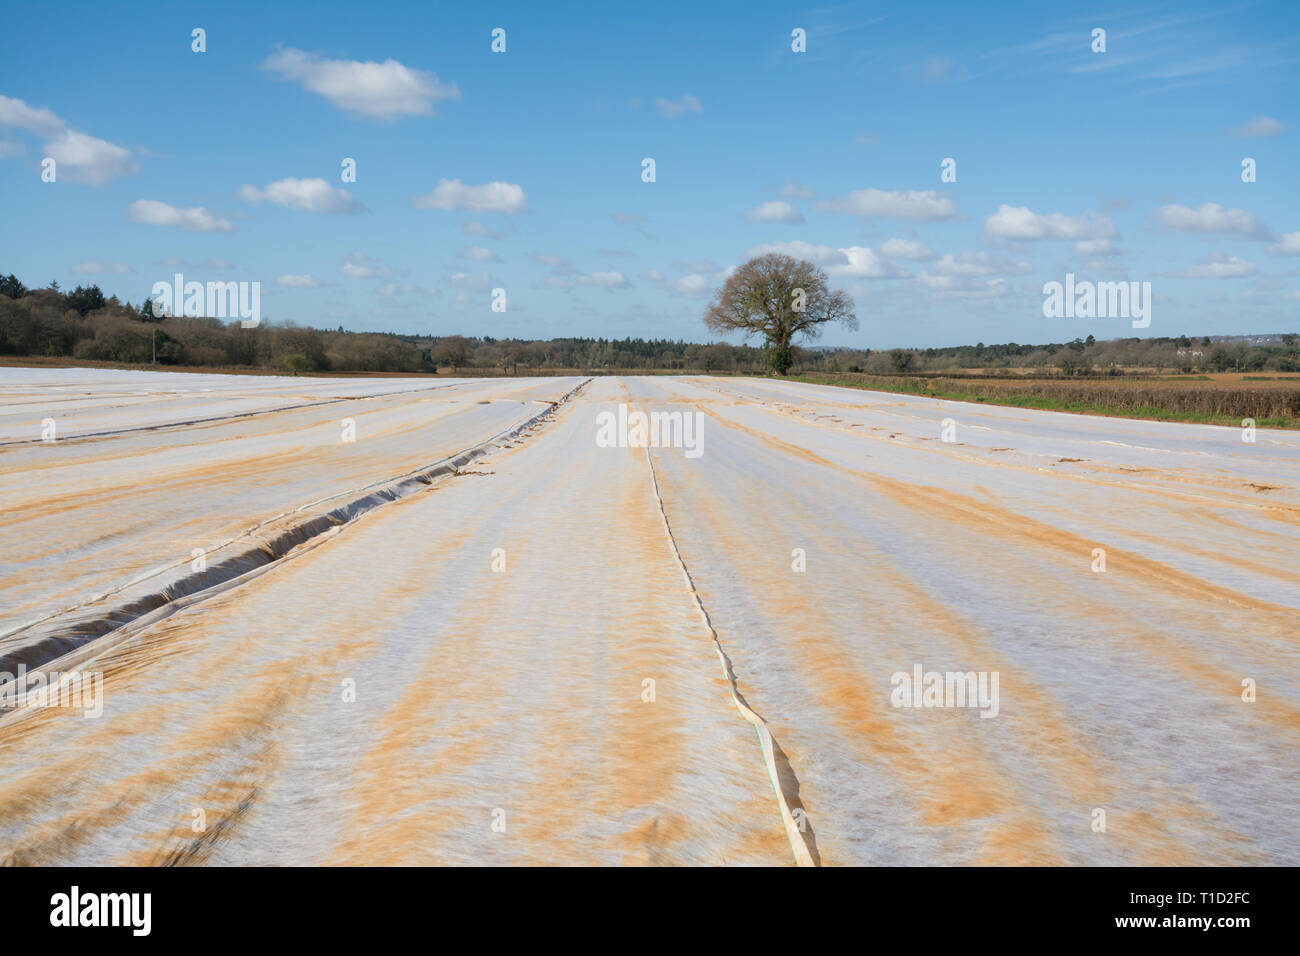 Campo arabili coperte in vello agricoli, il tessuto a maglia a proteggere ed isolare appena seminato semi da uccelli e gelate tardive, Surrey, Regno Unito, Marzo Foto Stock